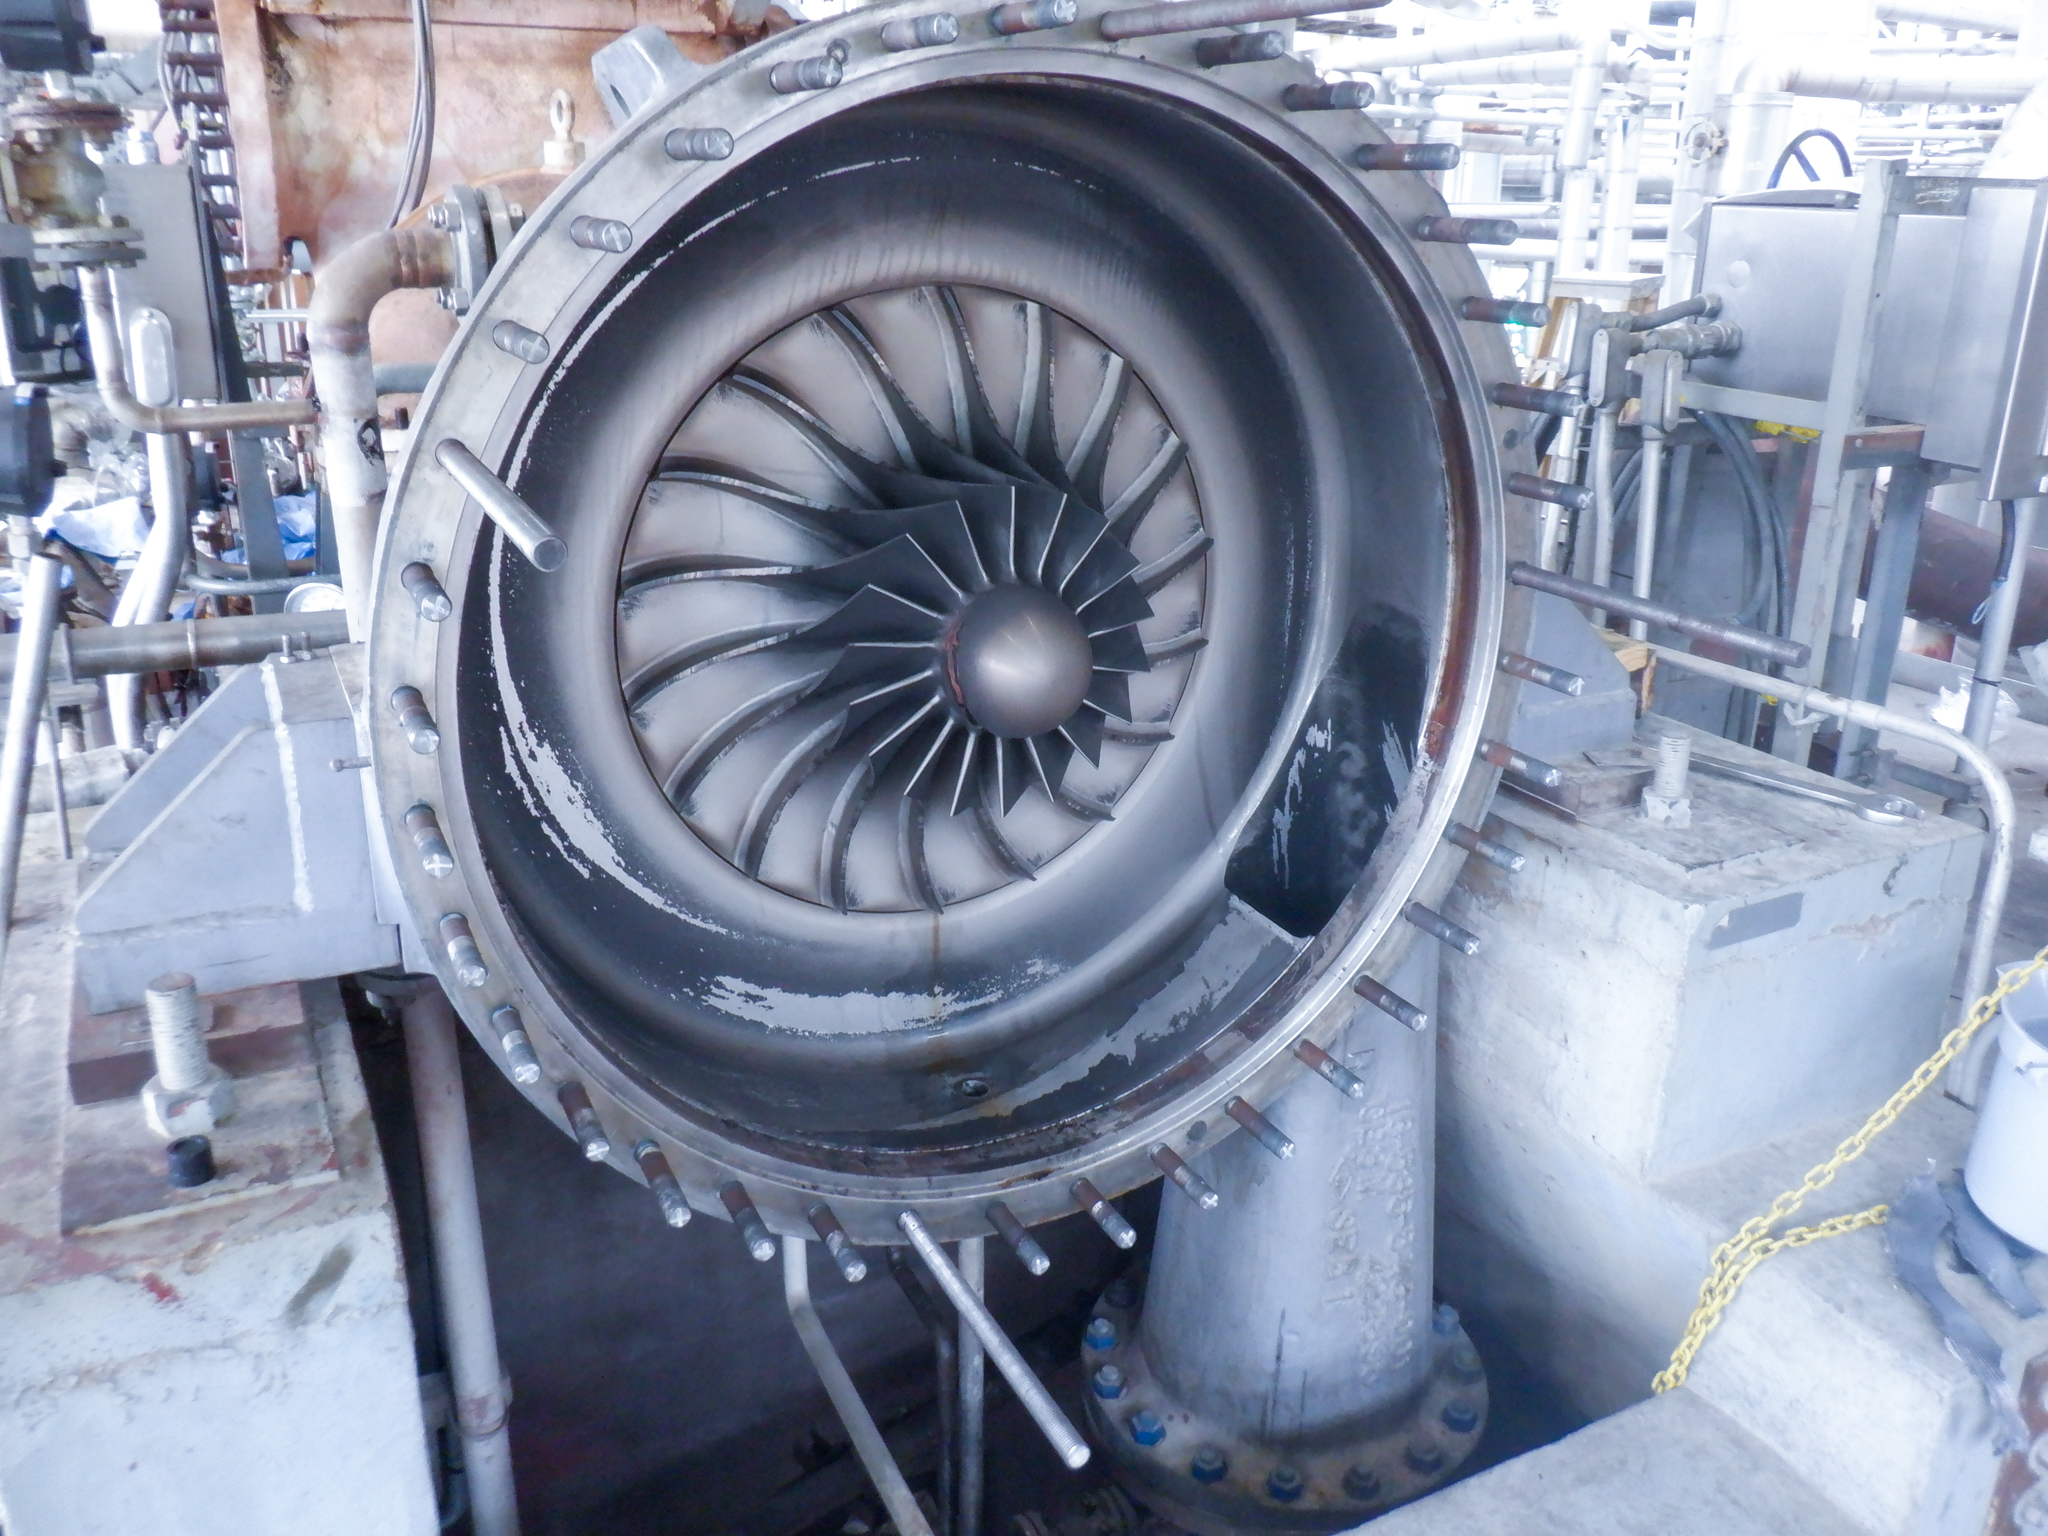 centrifugal compressor